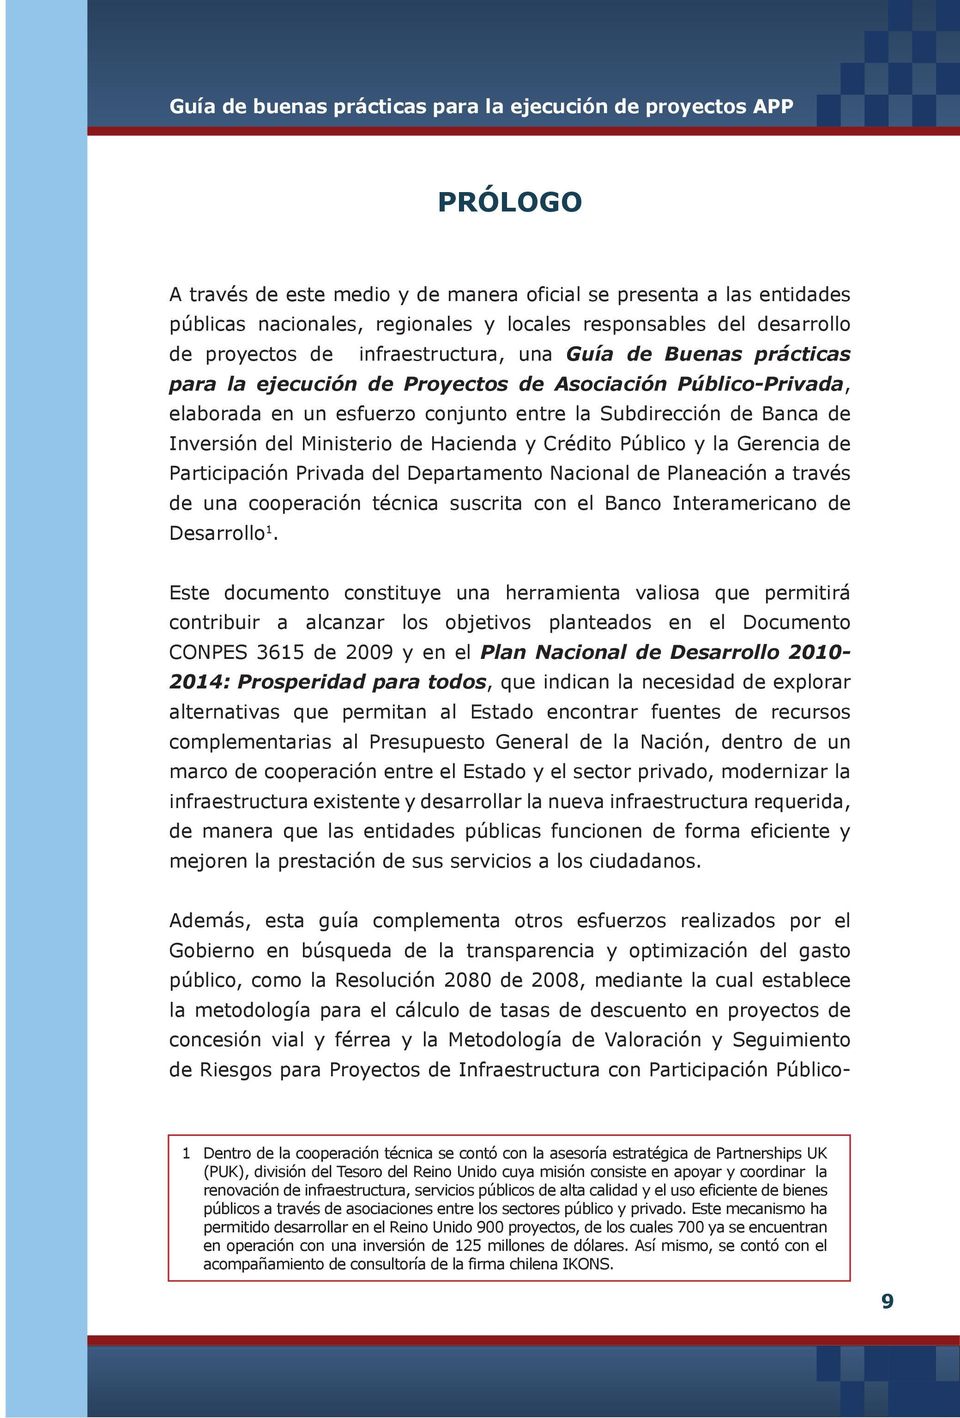 Público y la Gerencia de Participación Privada del Departamento Nacional de Planeación a través de una cooperación técnica suscrita con el Banco Interamericano de Desarrollo 1.